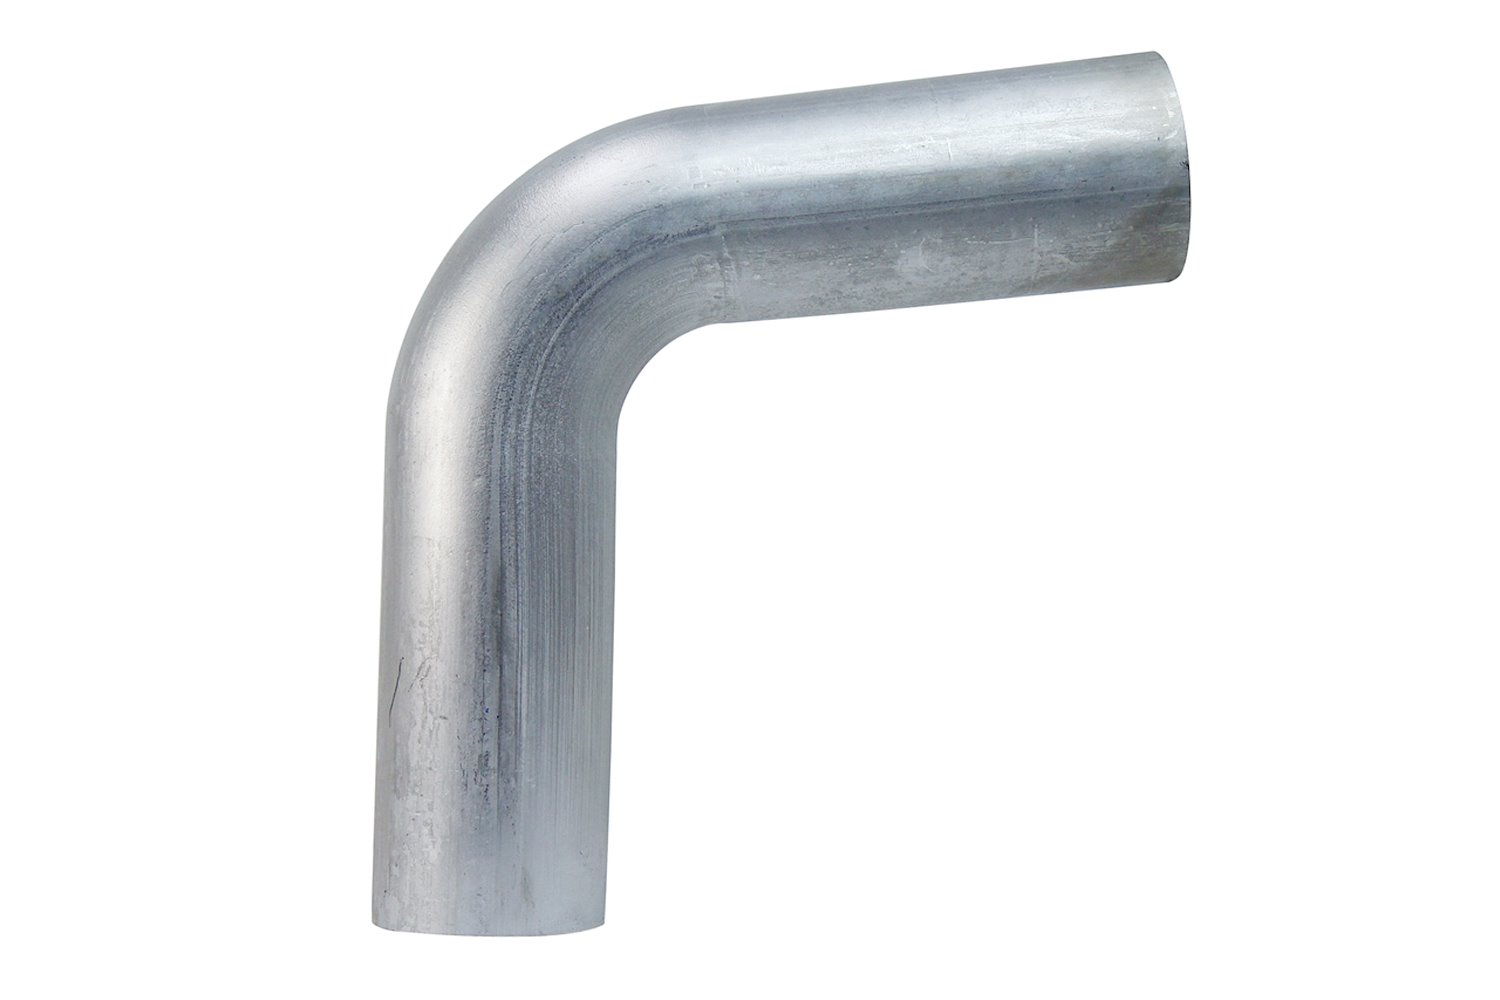 AT80-300-CLR-475 Aluminum Elbow Tube, 6061 Aluminum, 80-Degree Bend Elbow Tubing, 3 in. OD, Large Radius, 4-3/4 in. CLR